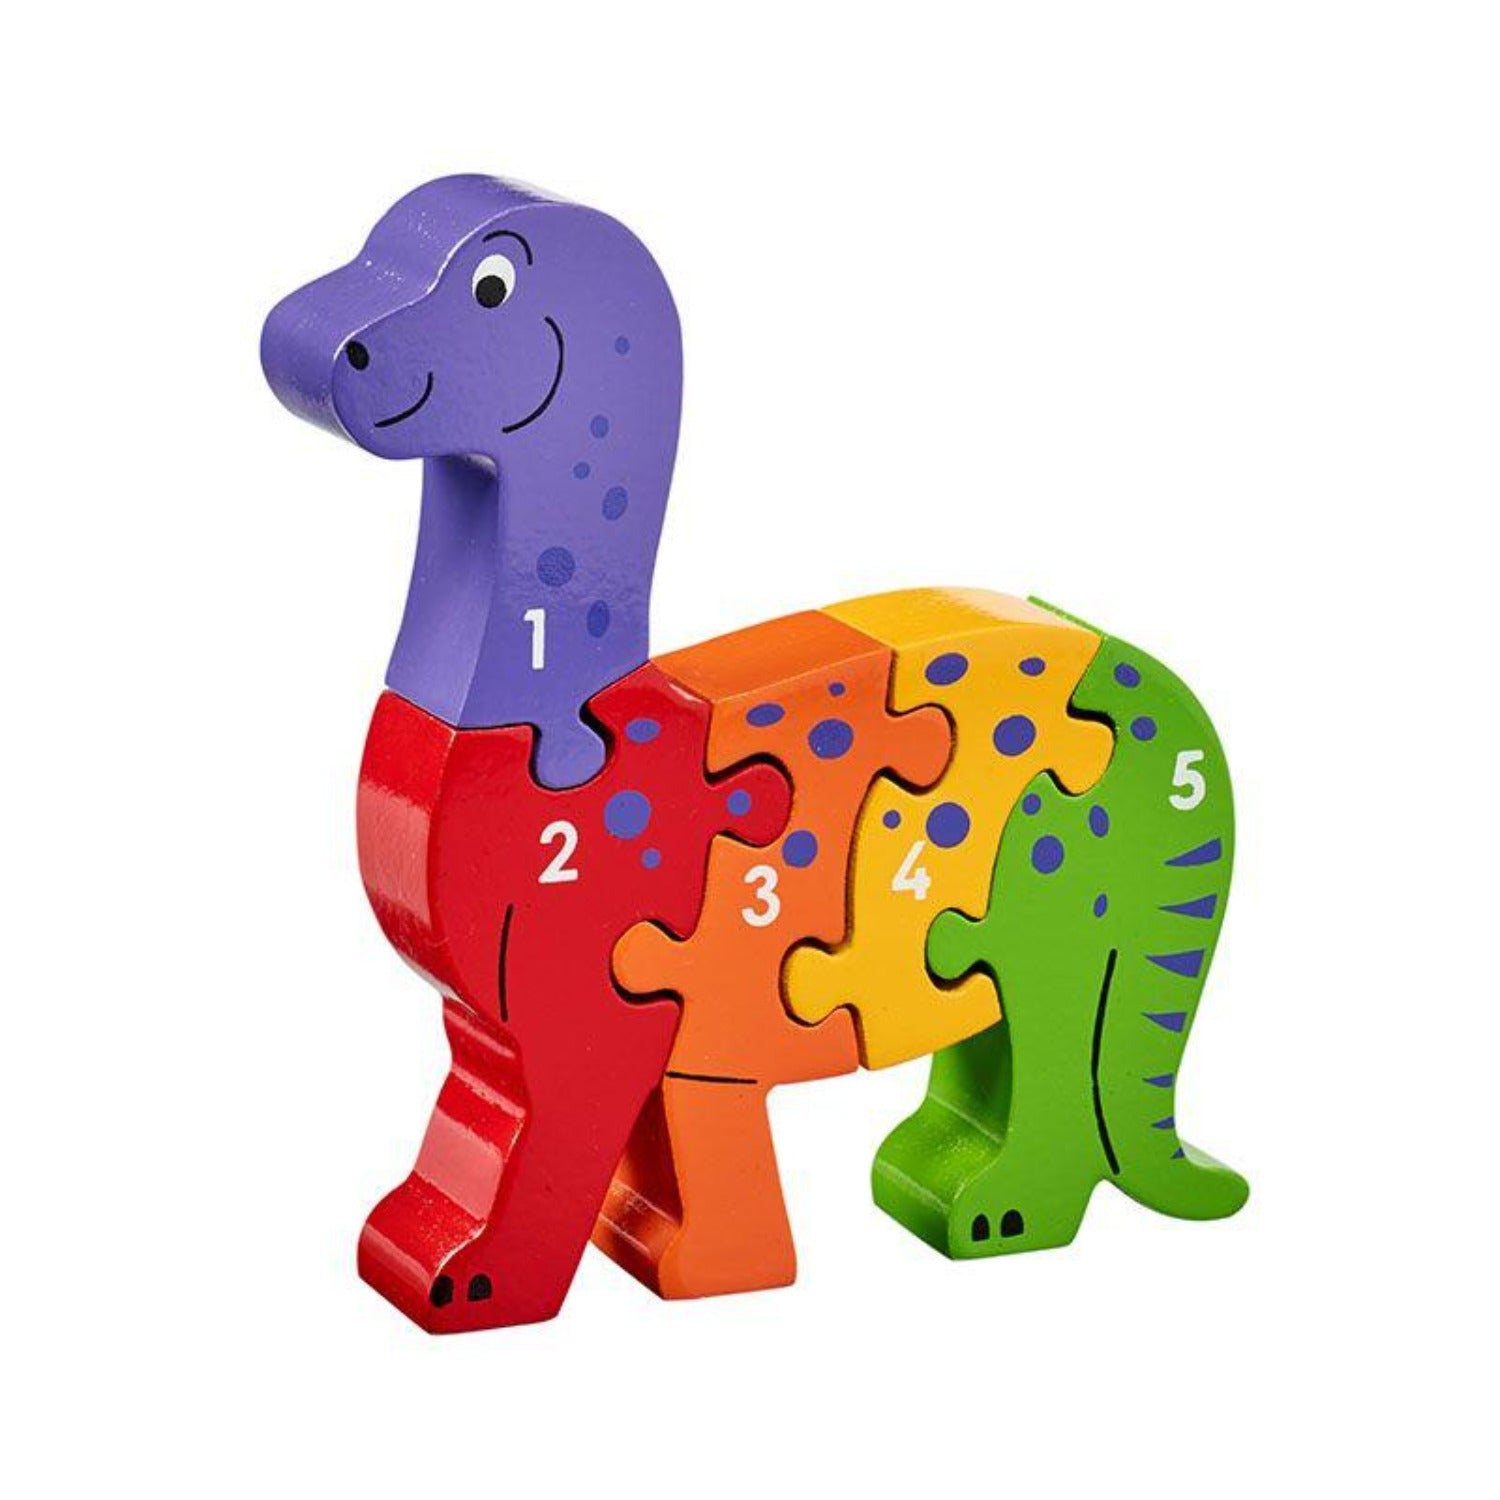 Dinosaur 1-5 Puzzle